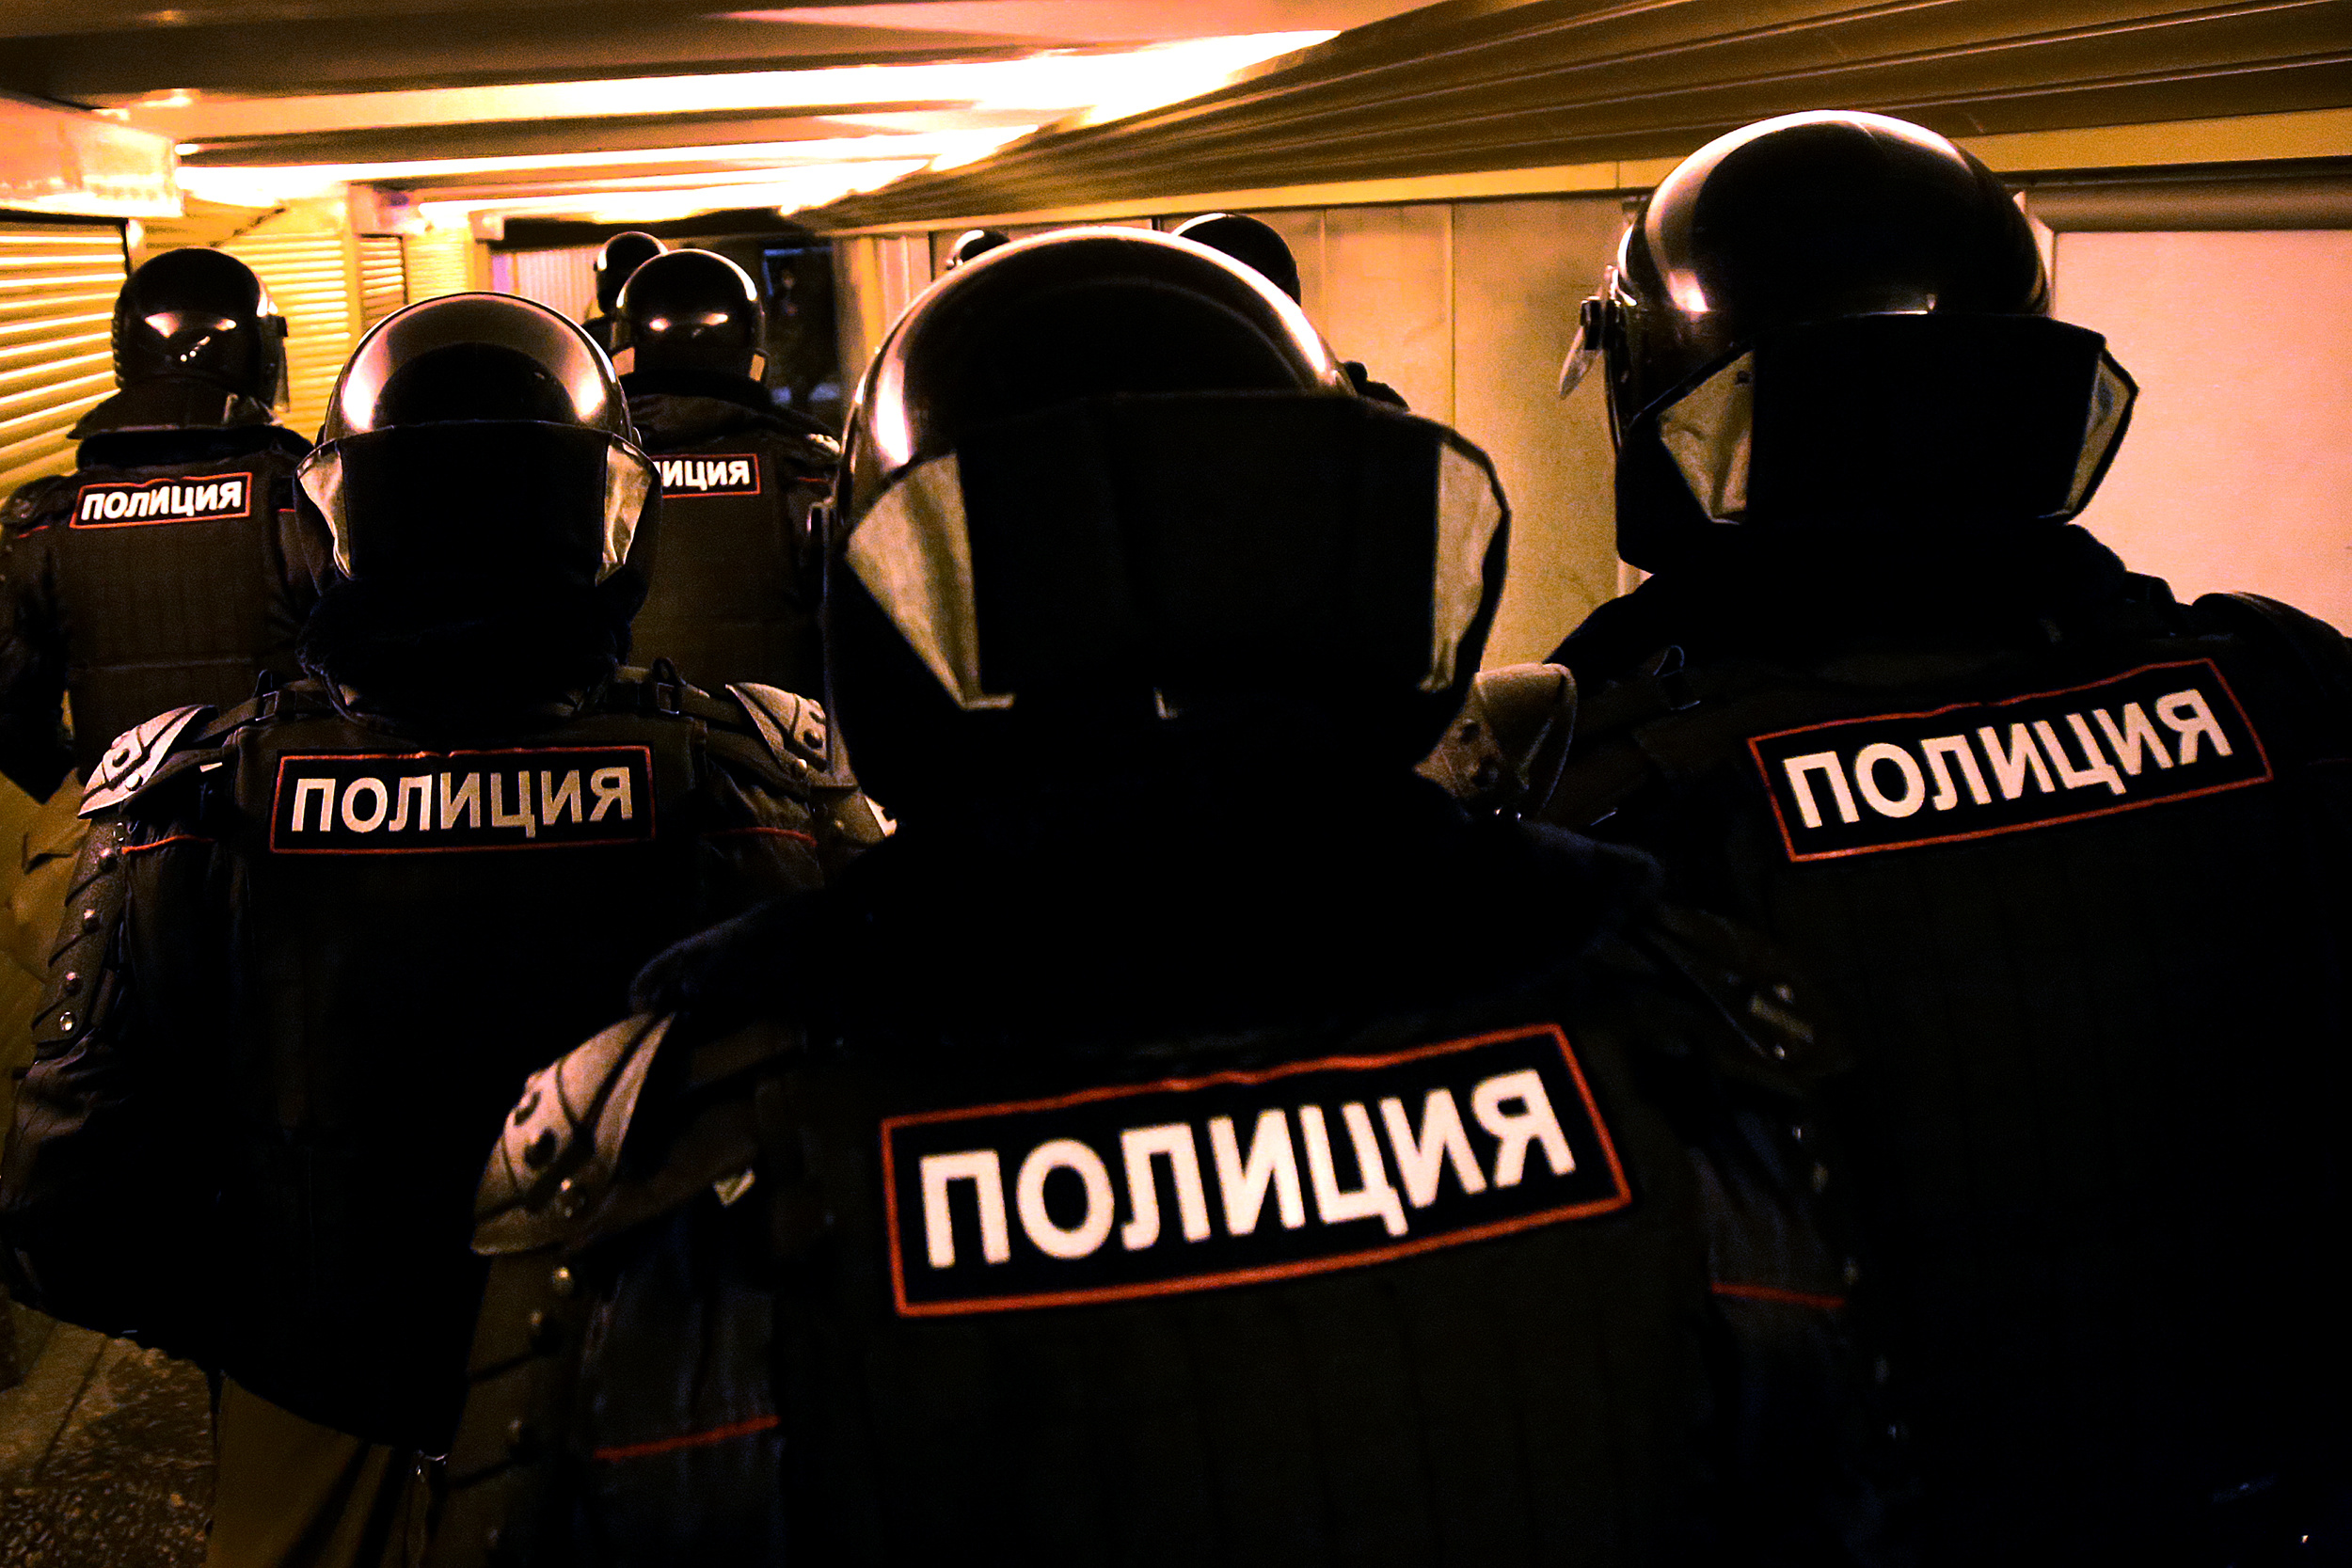 В регионах России ввели режим контртеррористической операции. Что это значит для людей